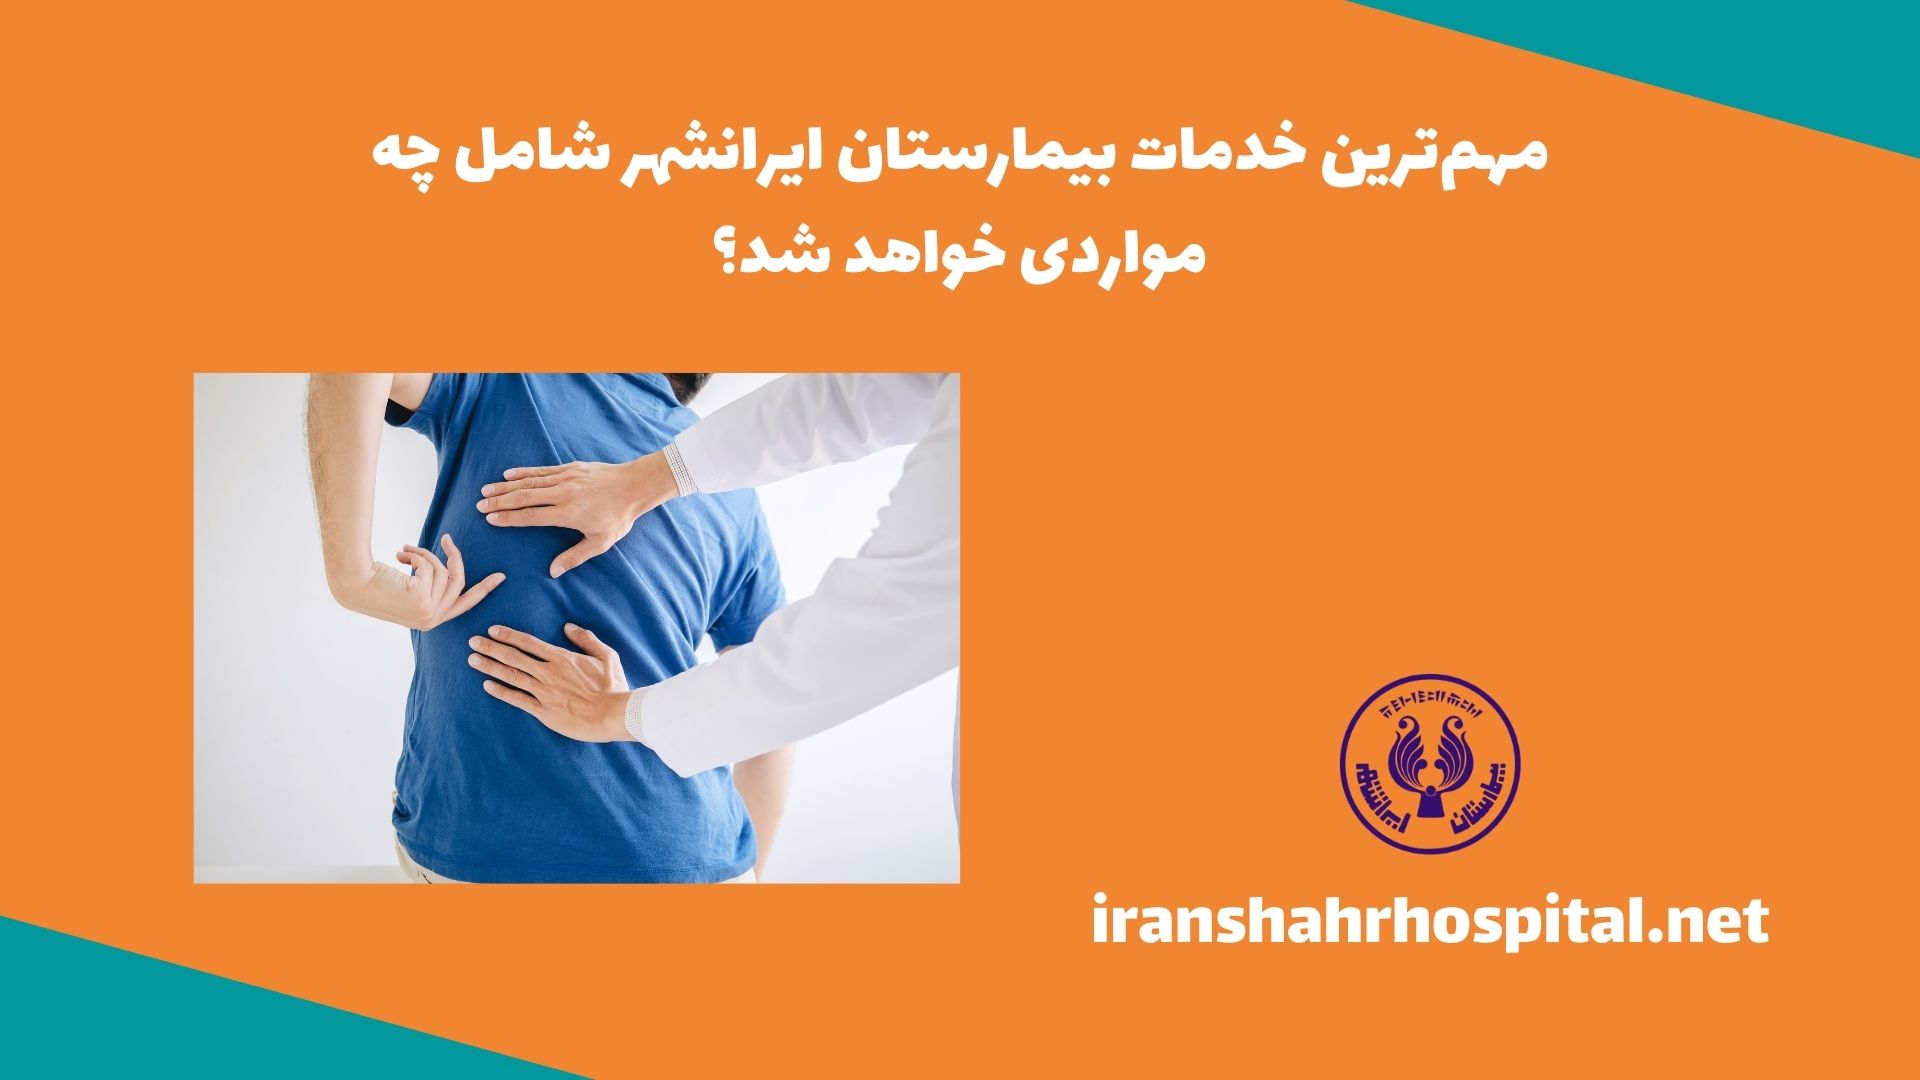 مهم‌ترین خدمات بیمارستان ایرانشهر، شامل چه مواردی خواهد شد؟